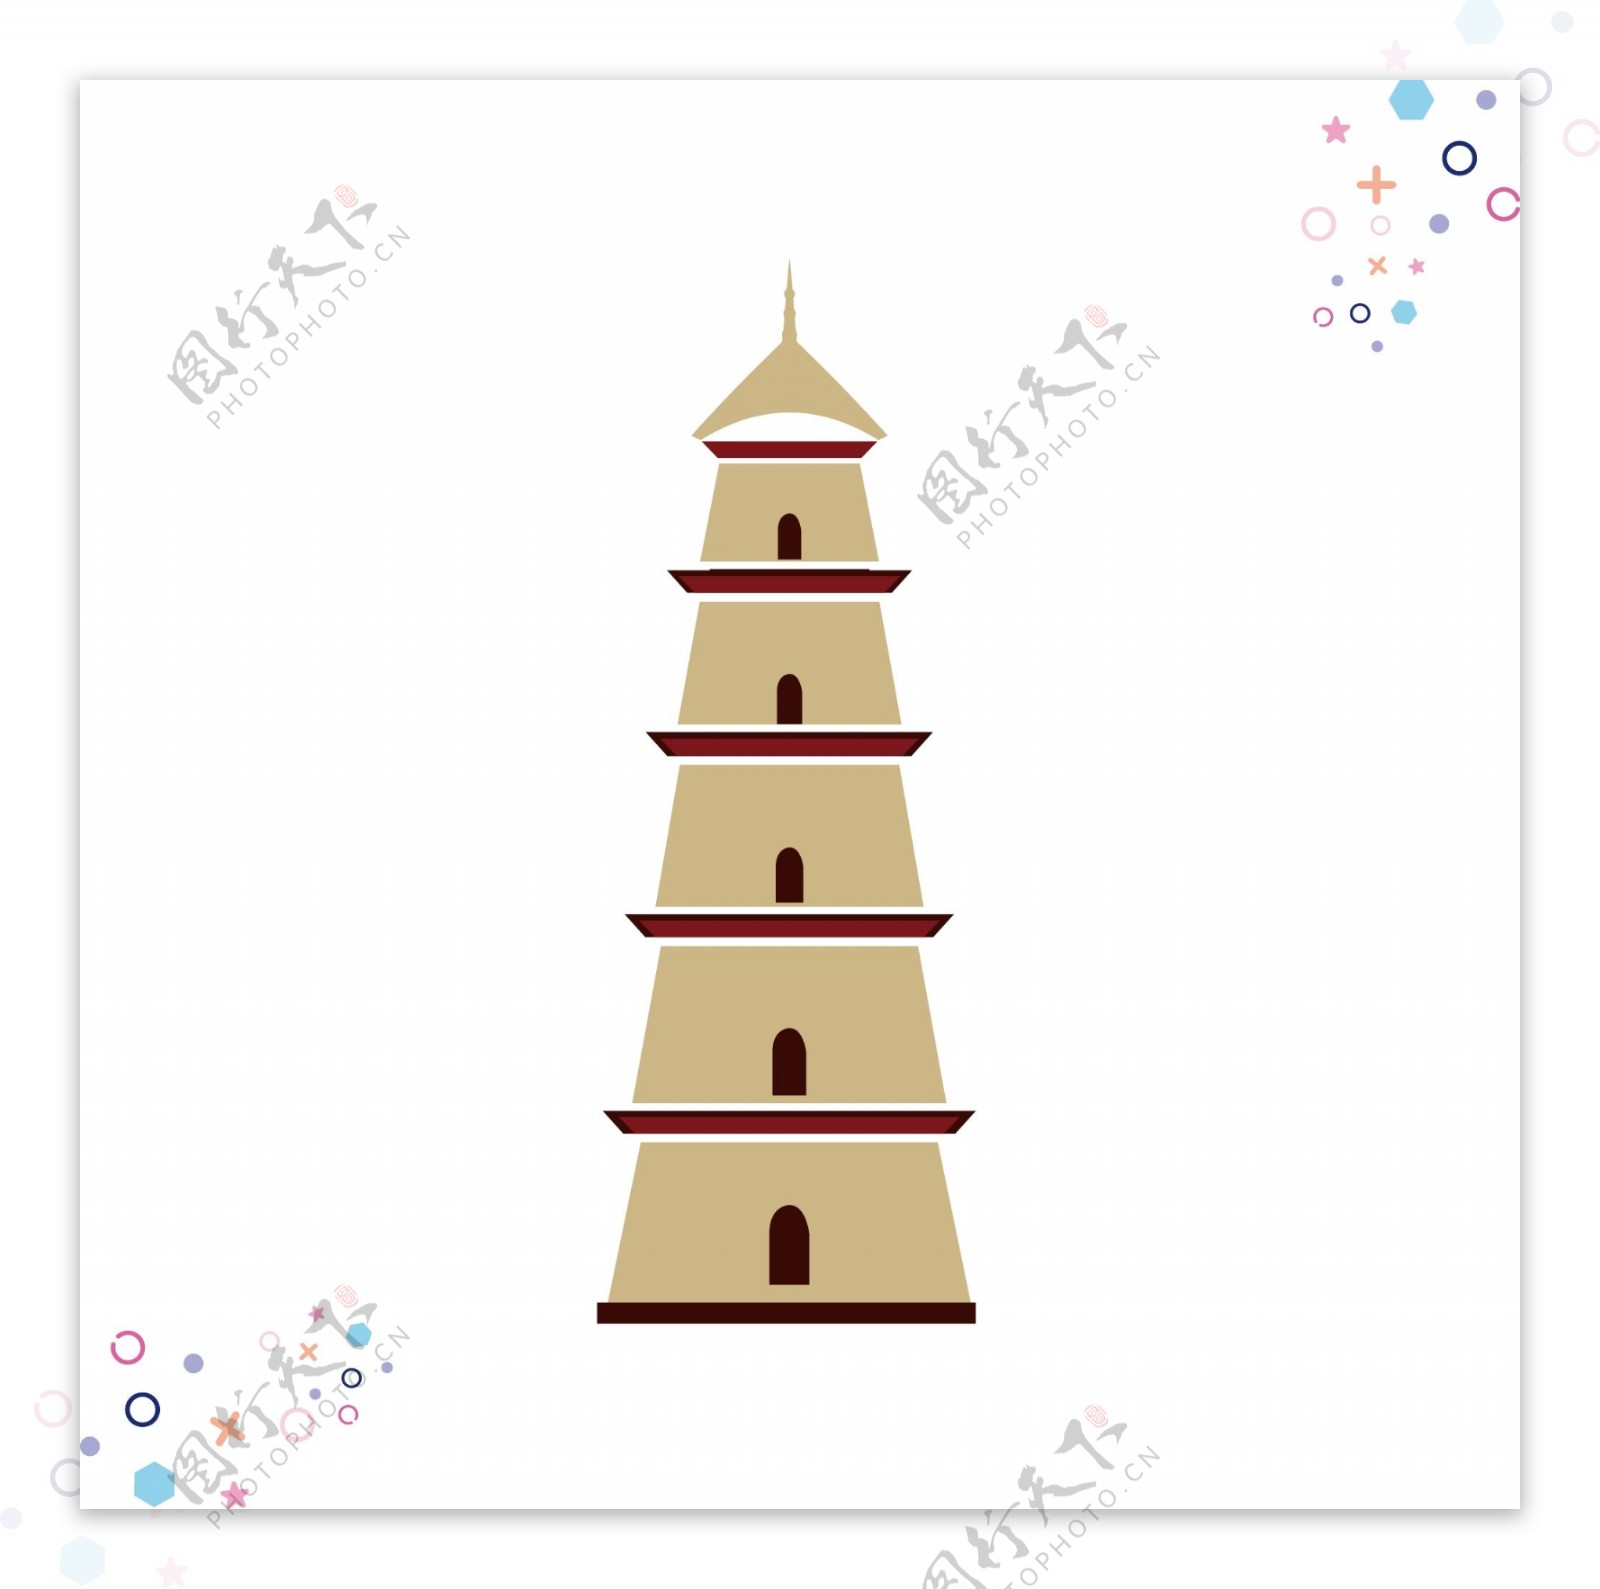 中国古代建筑矢量手绘元素背景套图5